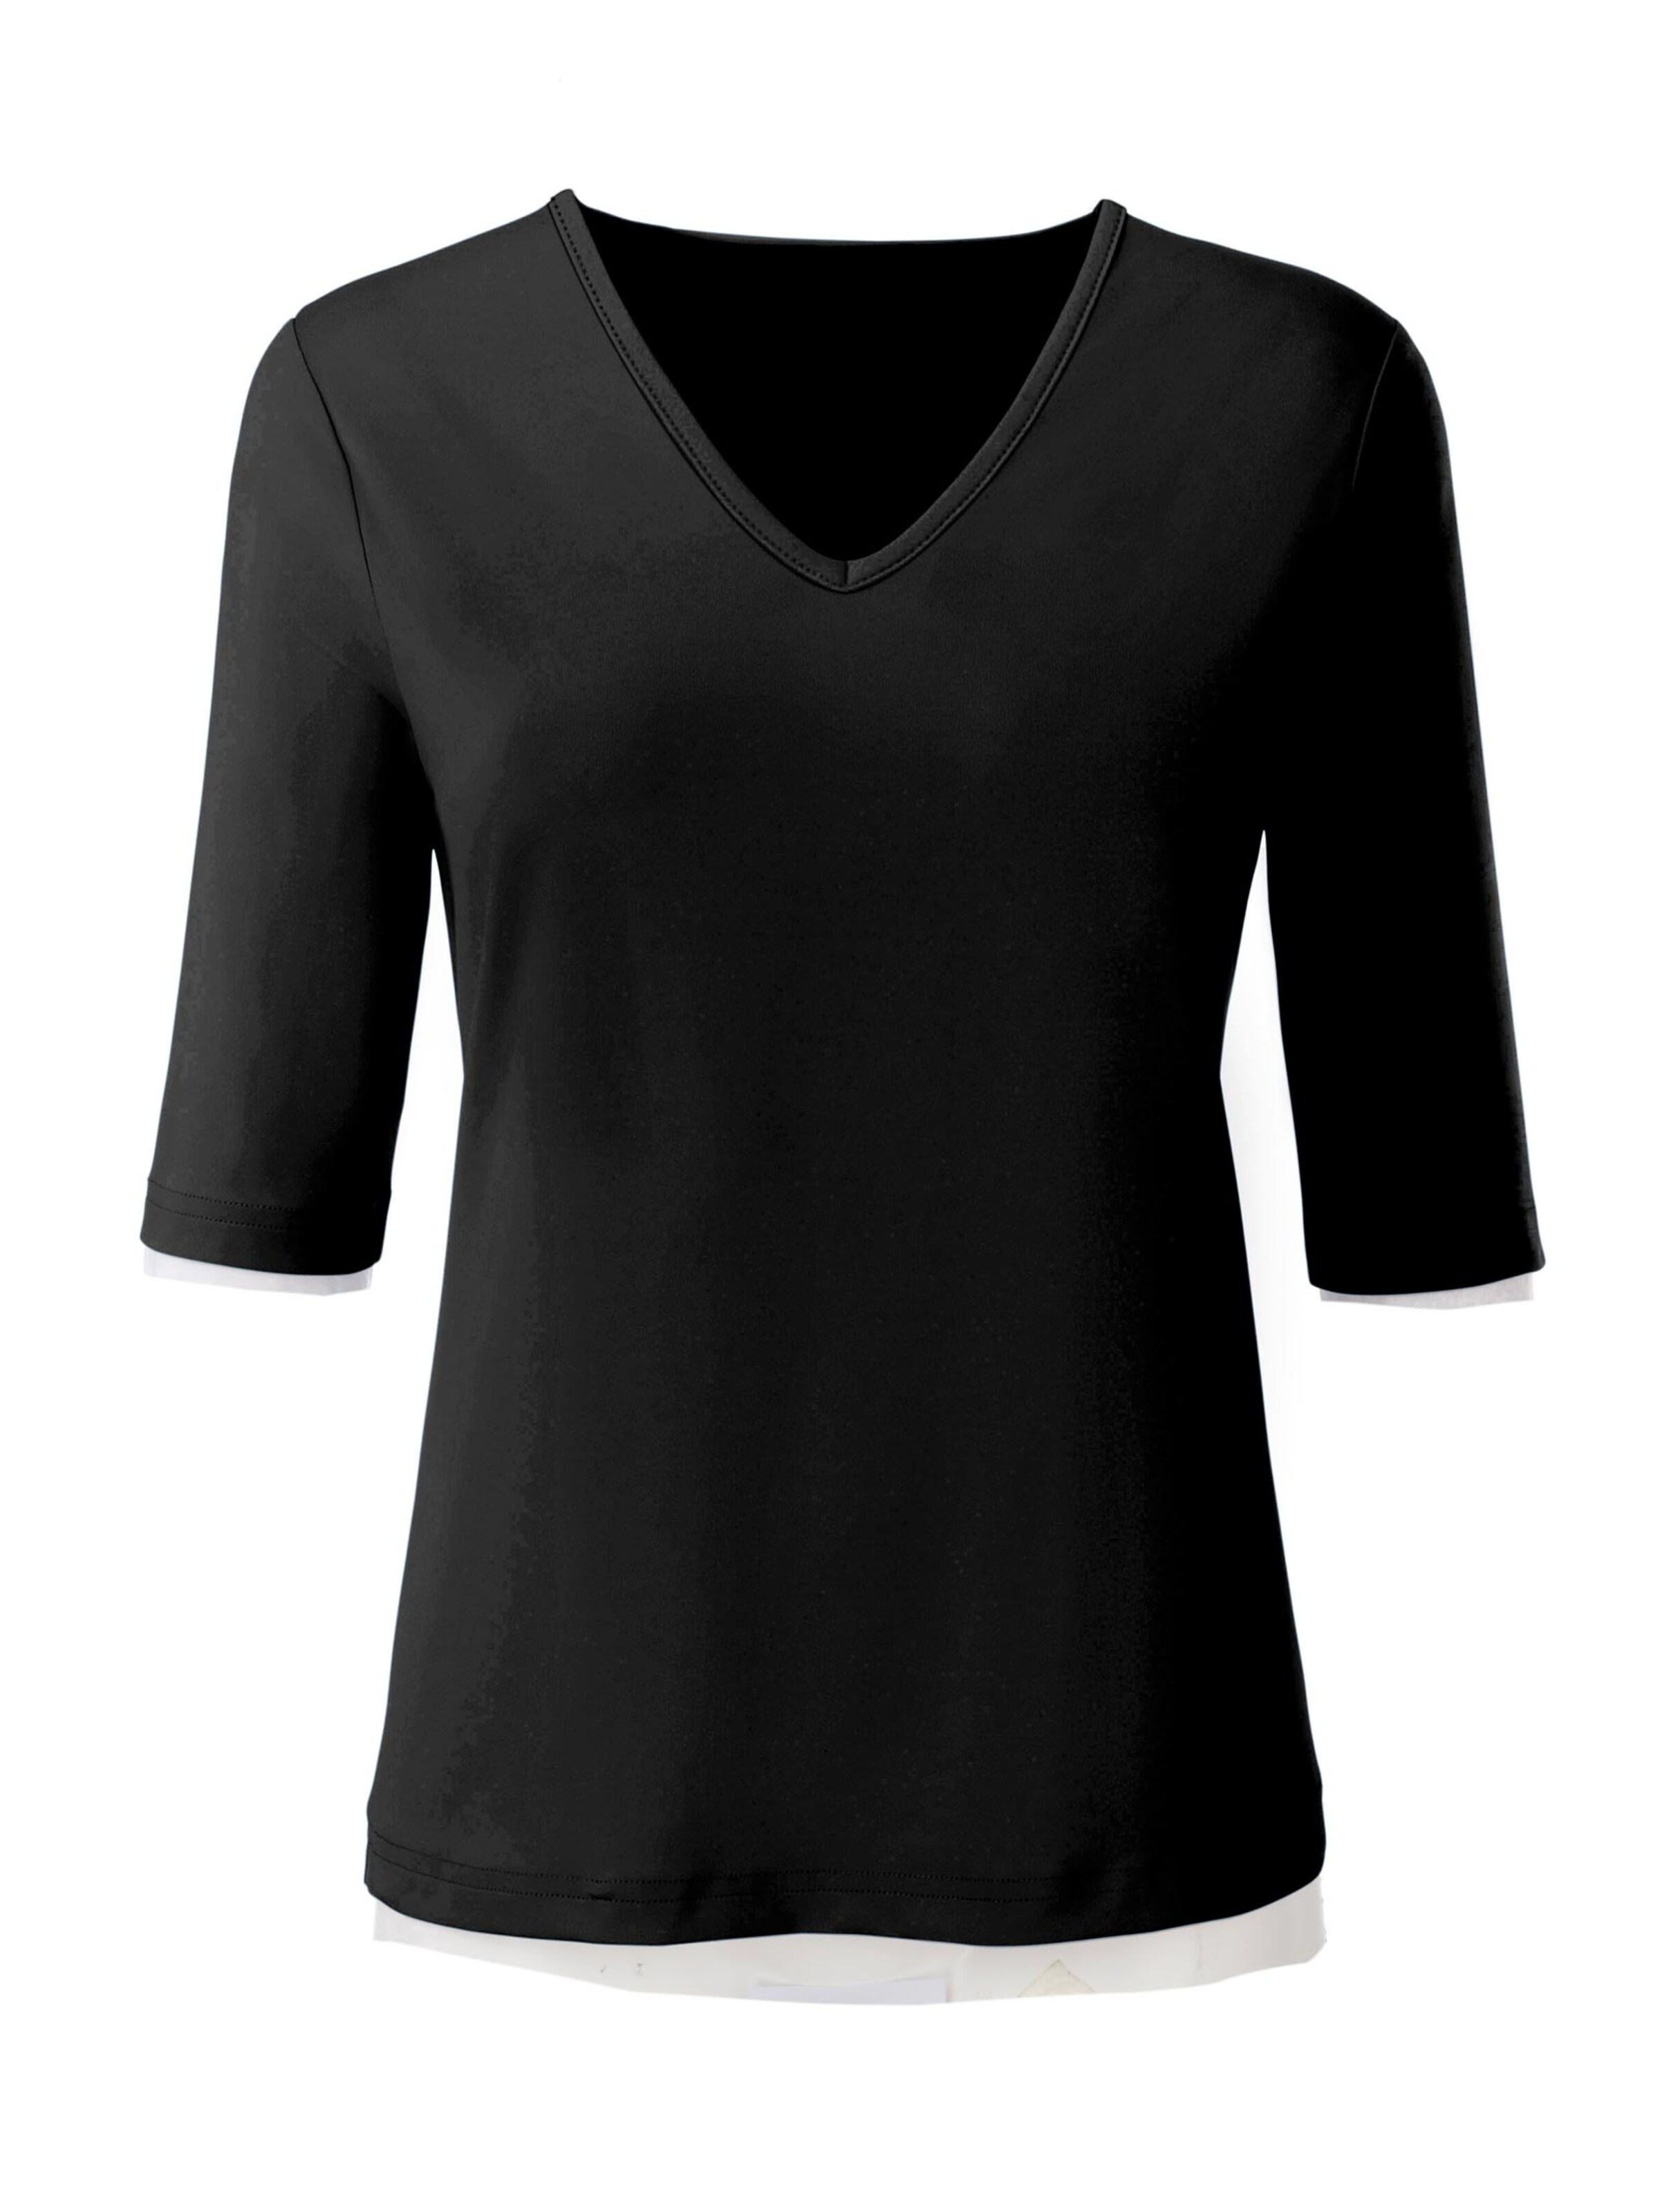 Damenmode Shirts V-Shirt in schwarz 